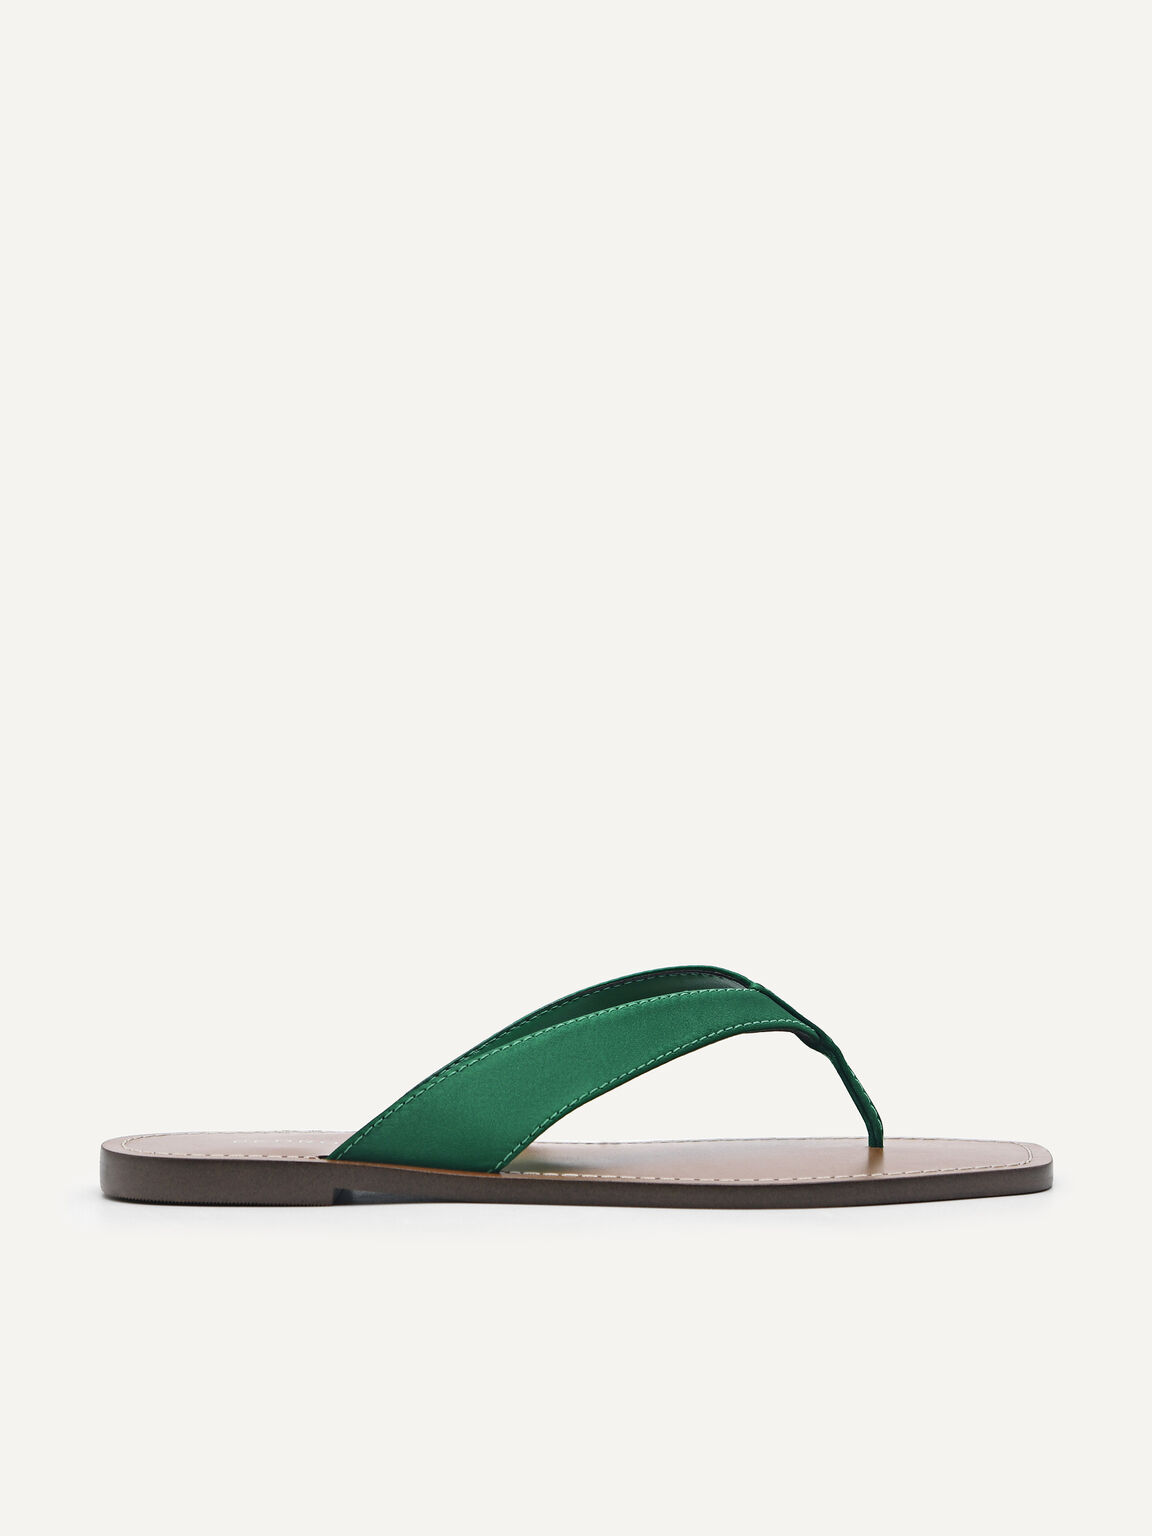 Jetta Sandals, Green